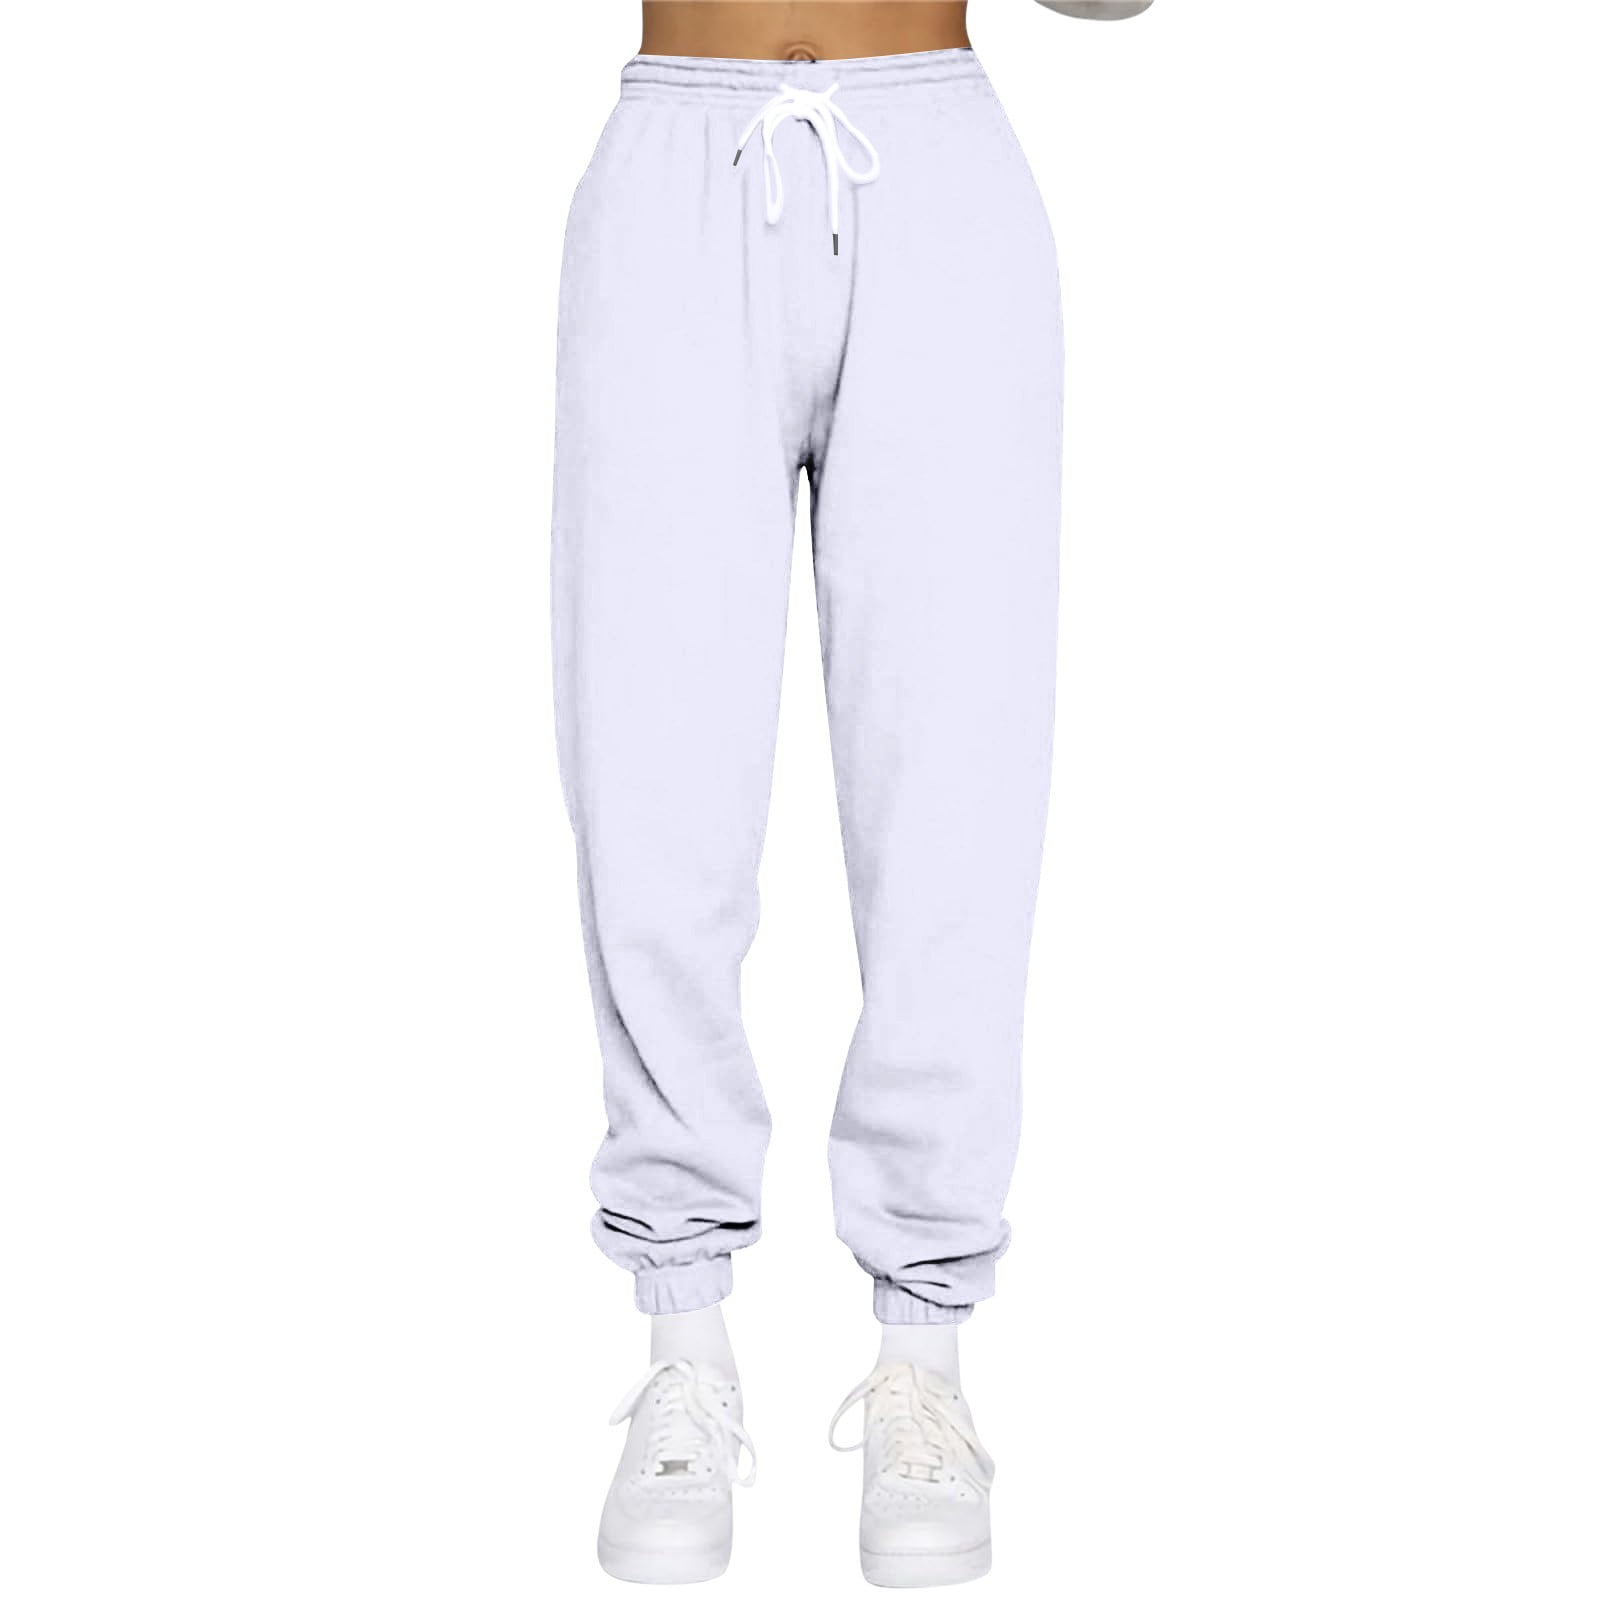 TQWQT Women's High Waist Capri Pants Loose Fitting Yoga Pants Comfy Lounge  Workout Capris Sweatpants with Pockets,Black XXXXL 